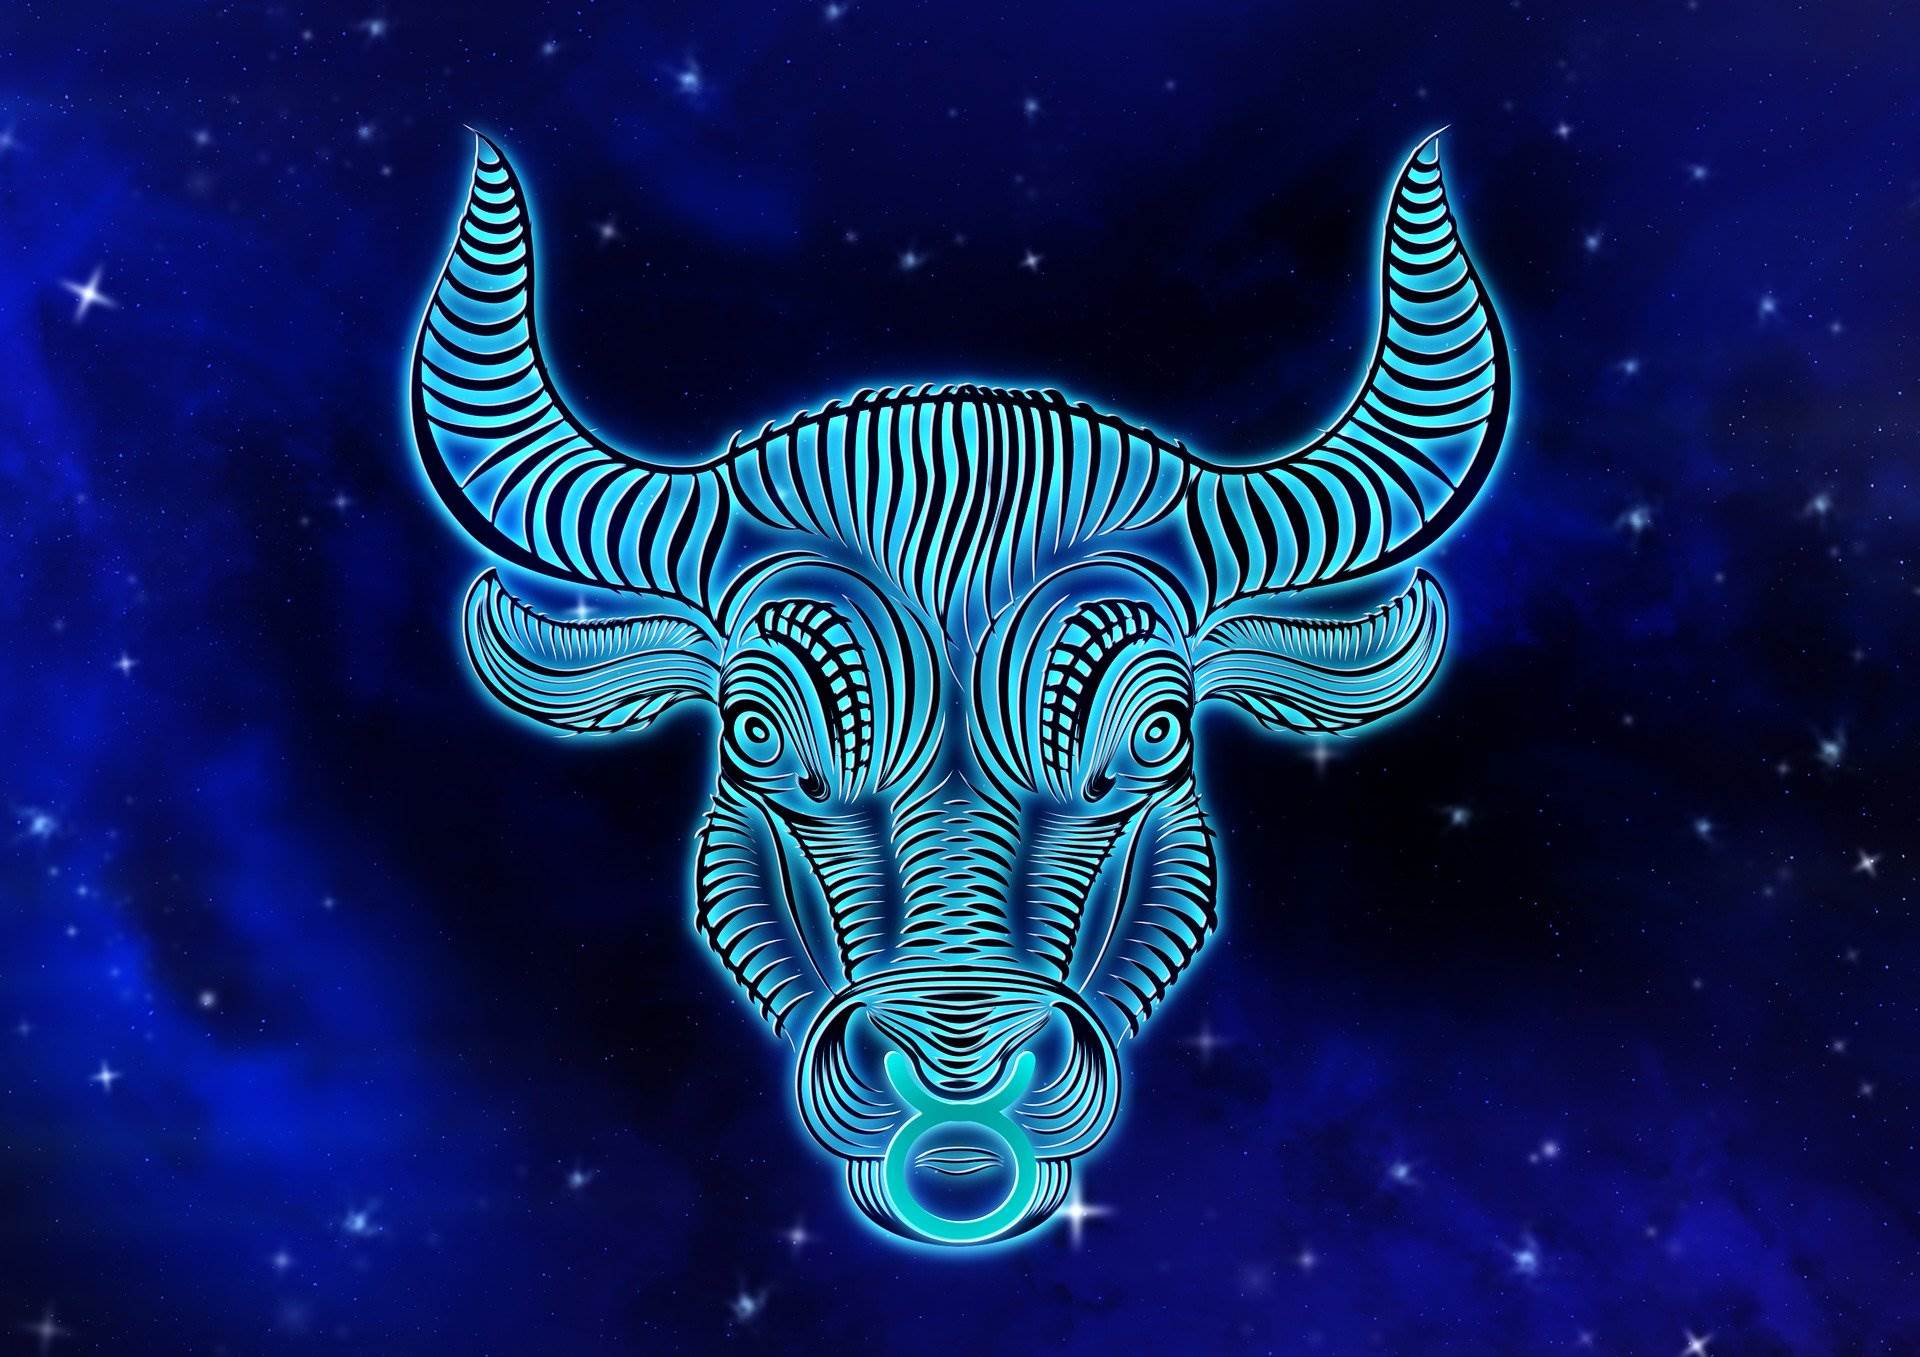 Horoscop urania 2020 taur